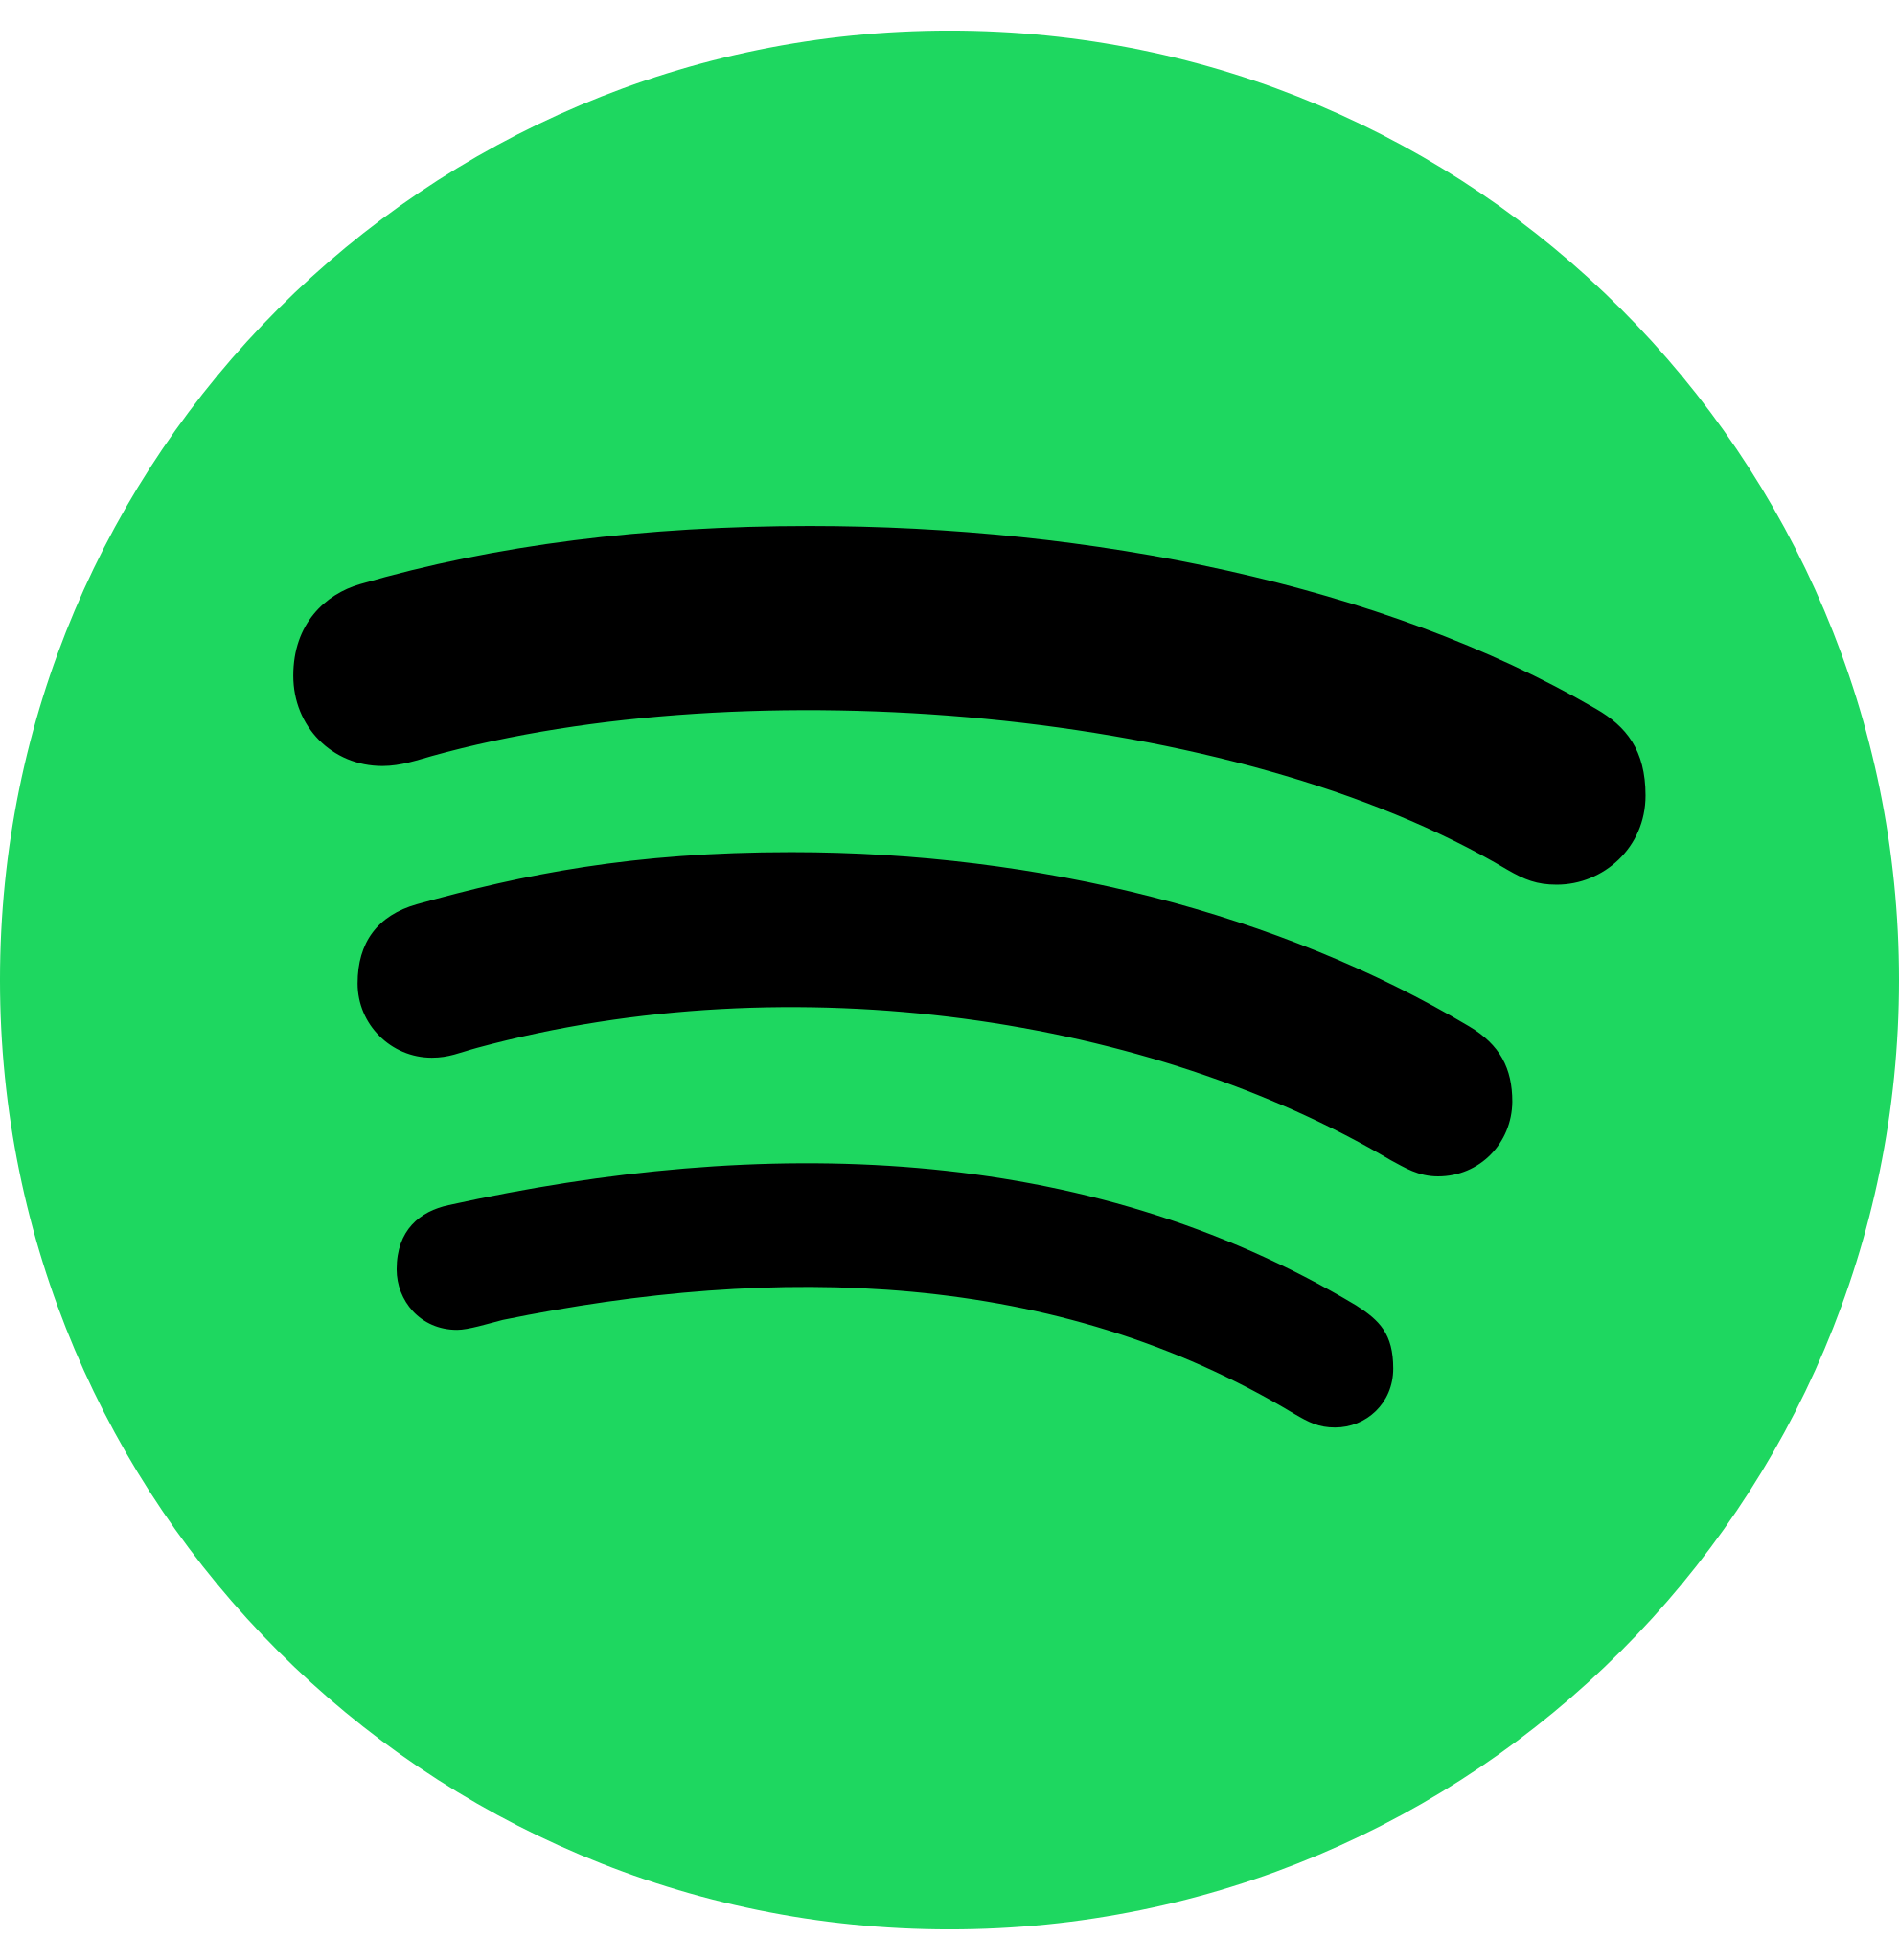 Spotify-Icon